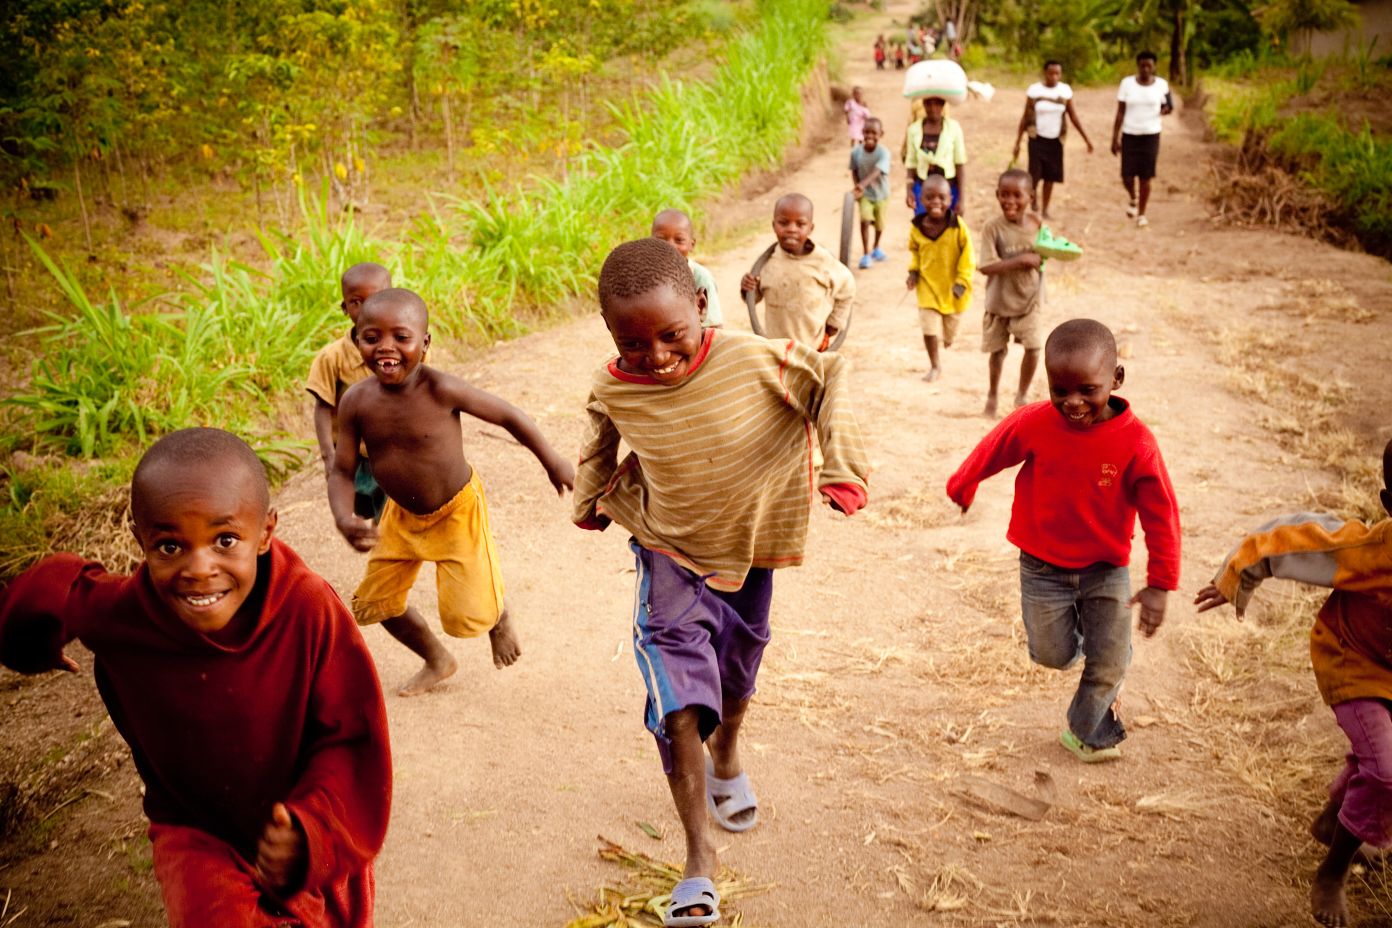 Î‘Ï€Î¿Ï„Î­Î»ÎµÏƒÎ¼Î± ÎµÎ¹ÎºÏŒÎ½Î±Ï‚ Î³Î¹Î± rwanda kid